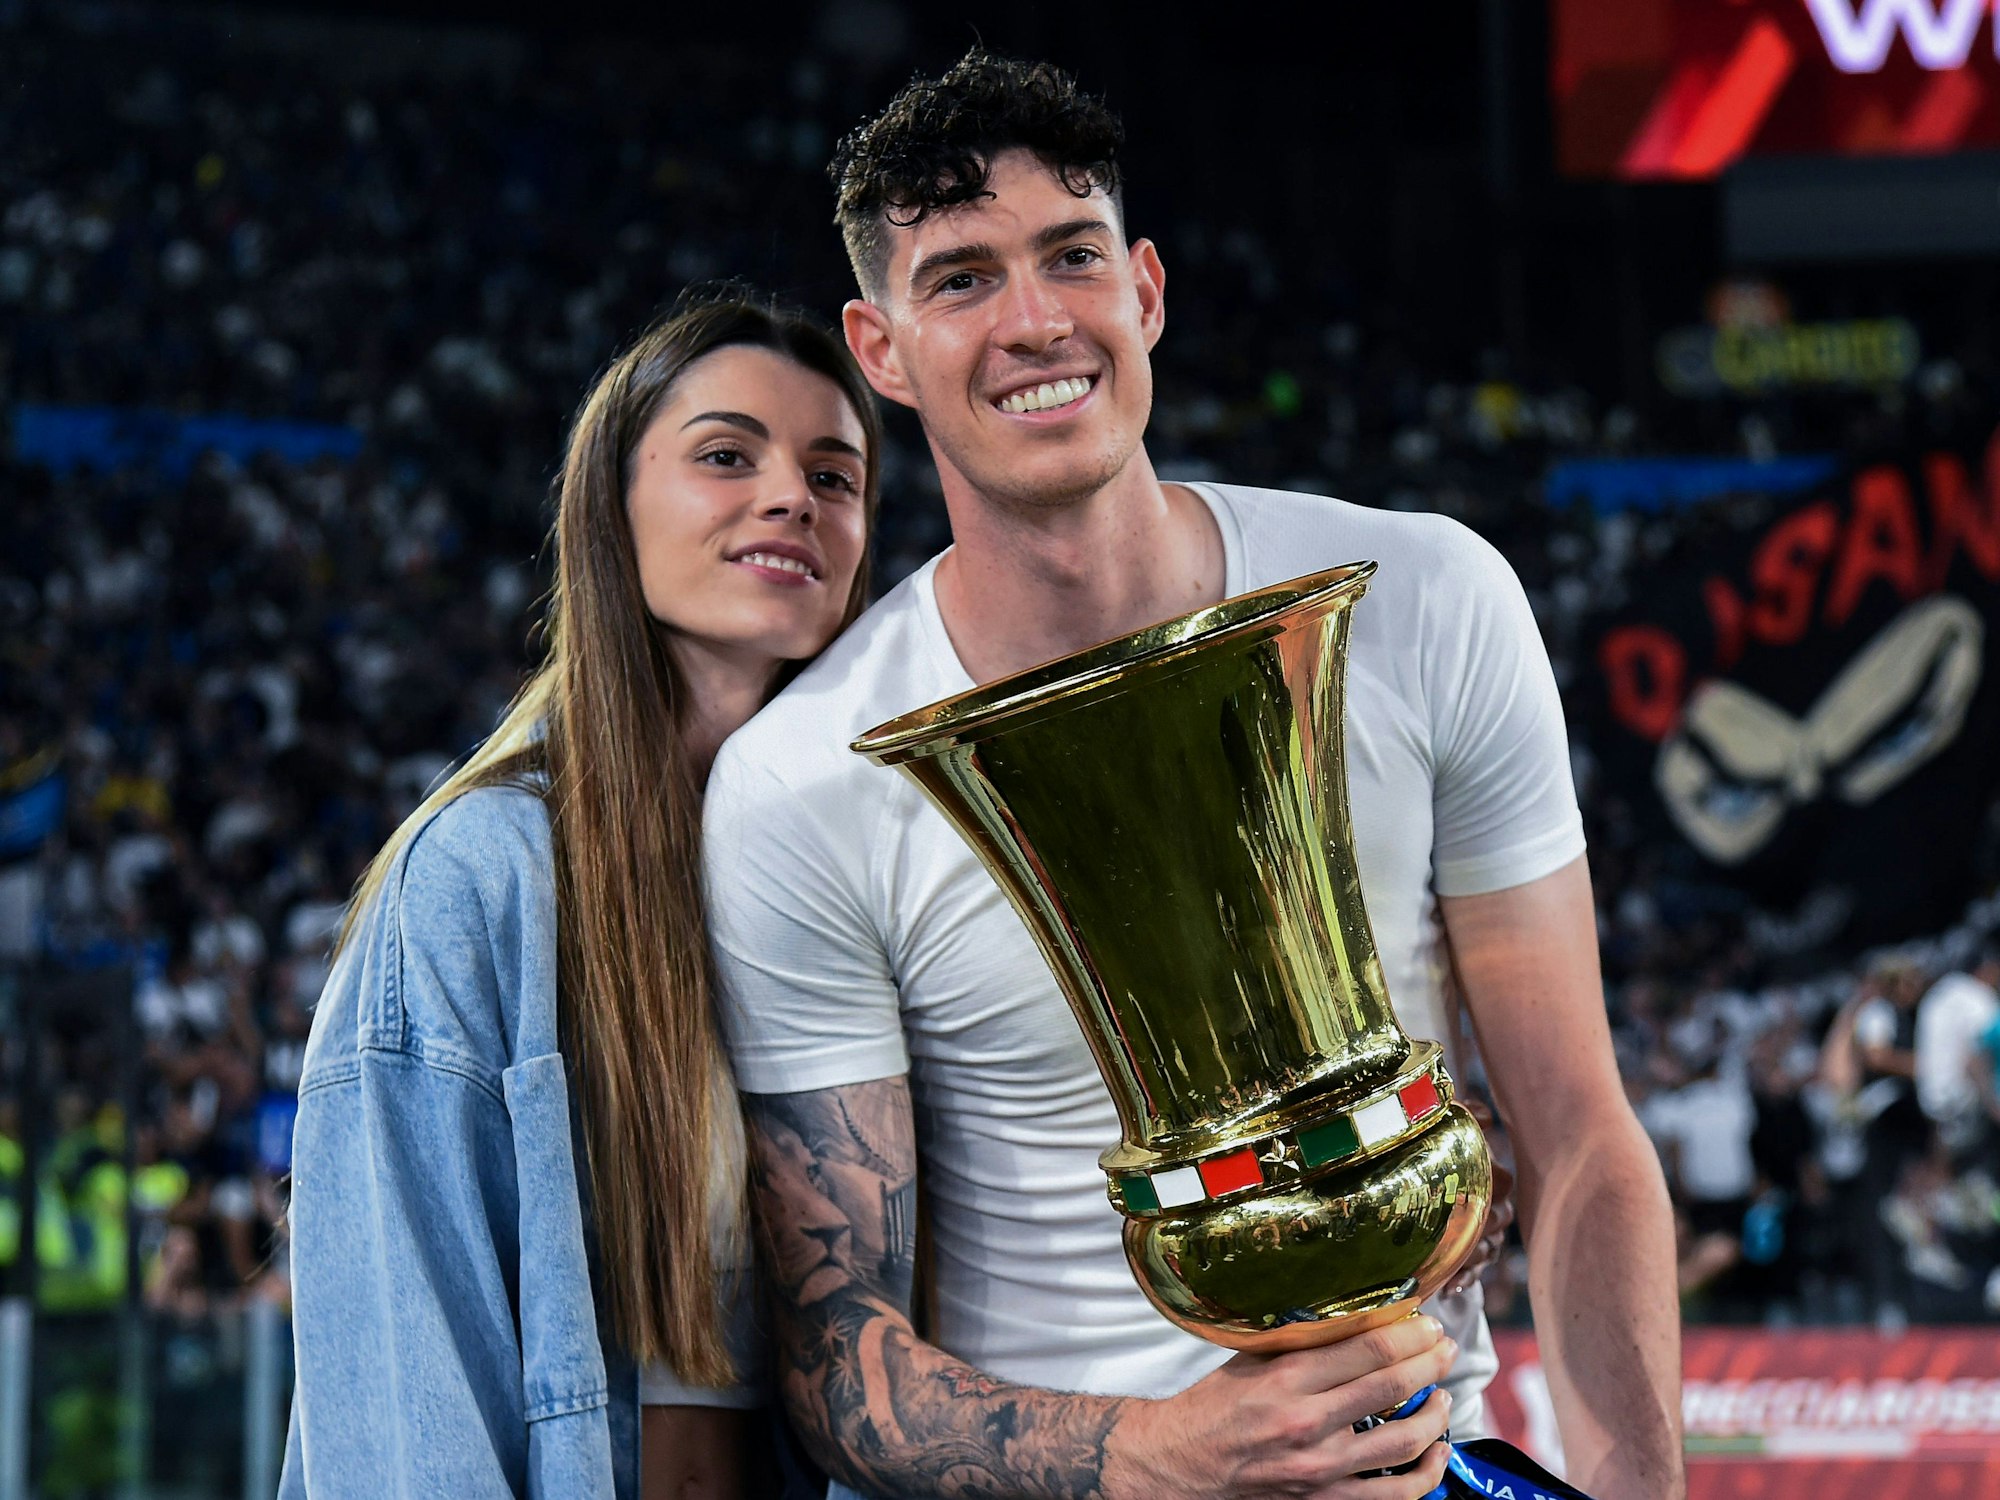 Alessandro Bastoni mit dem italienischen Pokal in der Hand neben seiner Freundin Camilla Bresciani